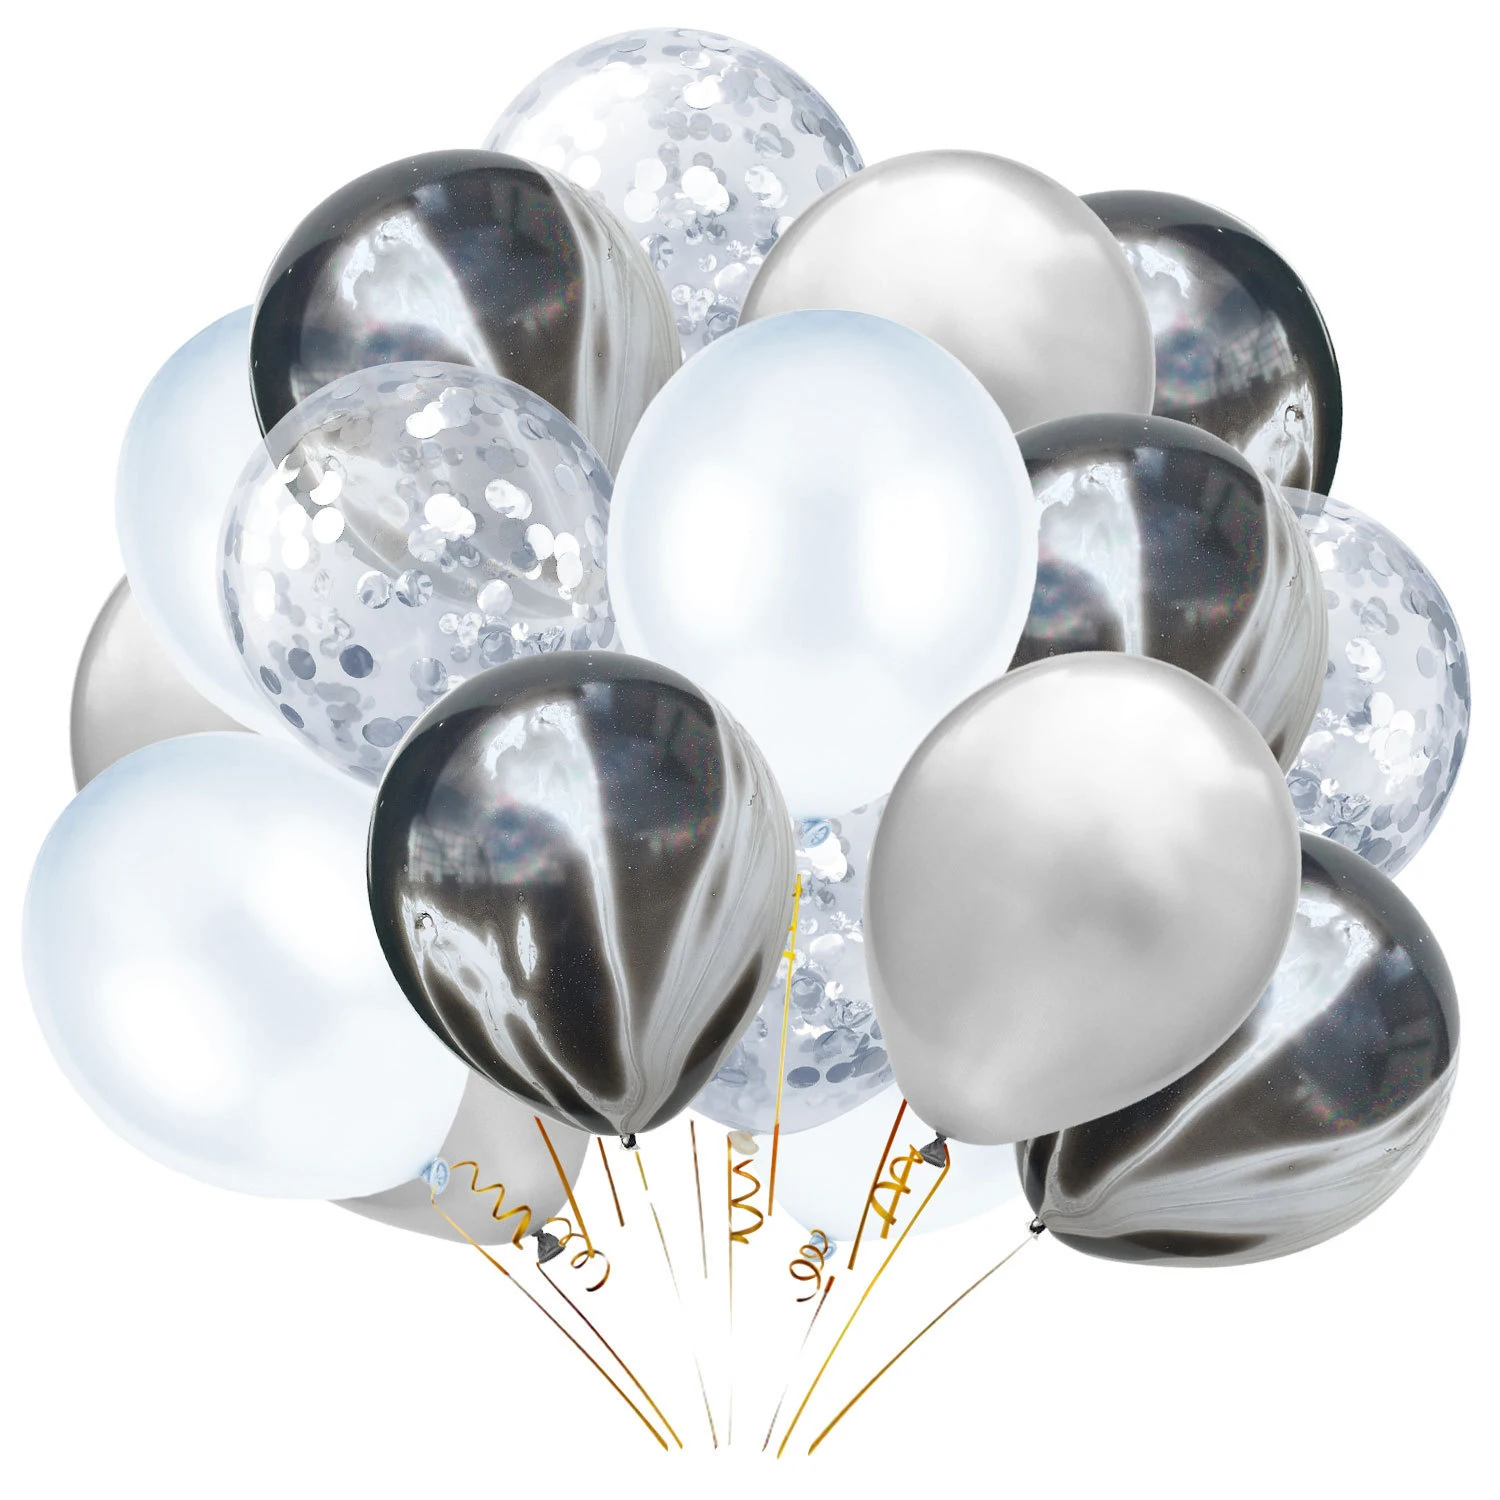 

30 шт./компл. 12 дюймов черный агат Цвет серебро латексный воздушный шар "Конфетти" комплект для свадьбы или «нулевого дня рождения» для детей, ...